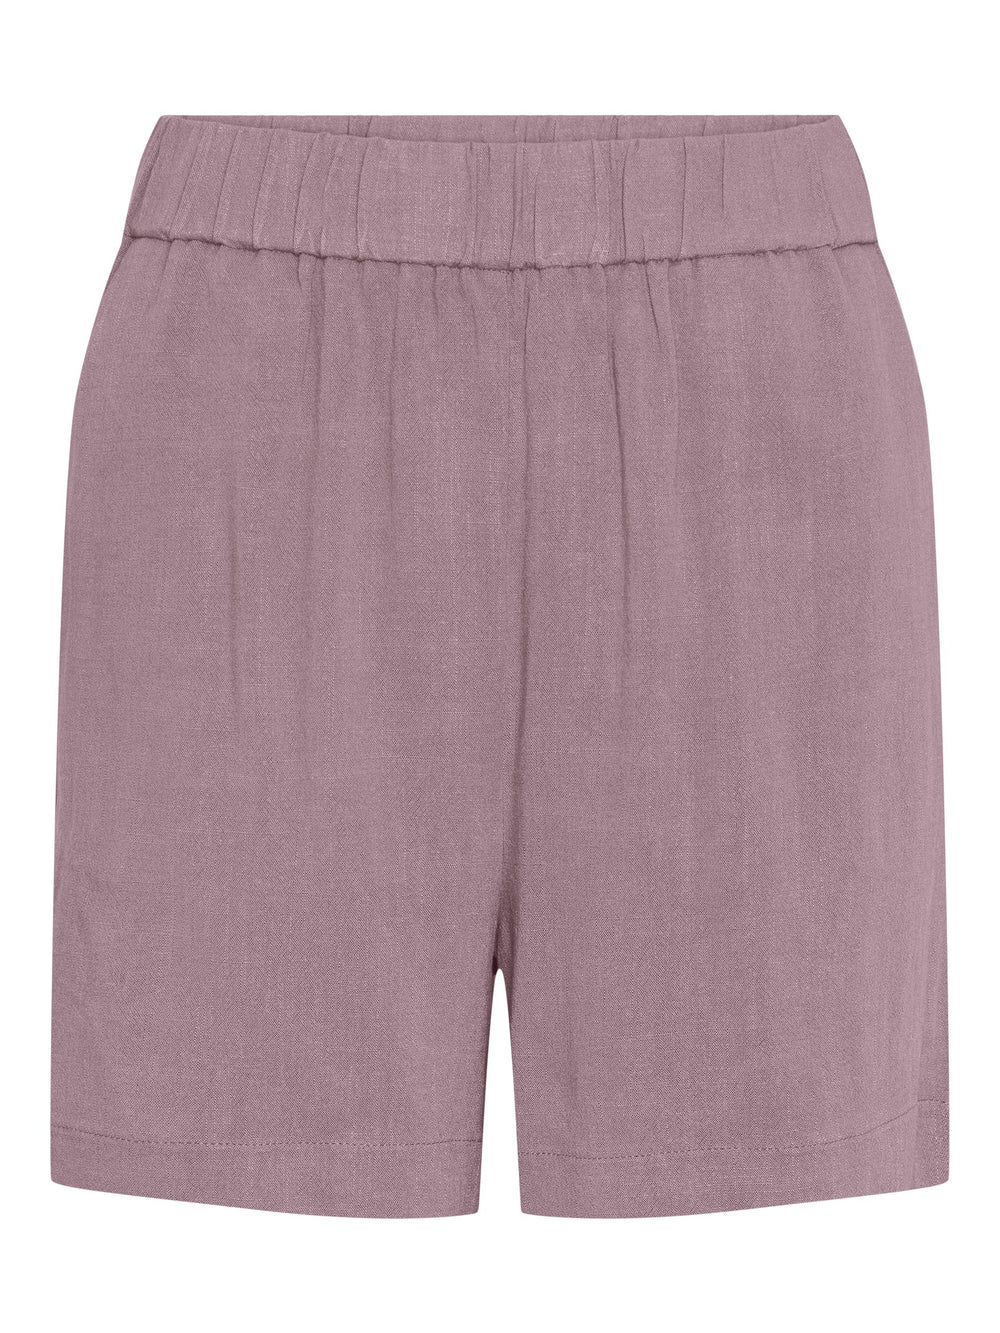 PCVINSTY Woodrose Shorts